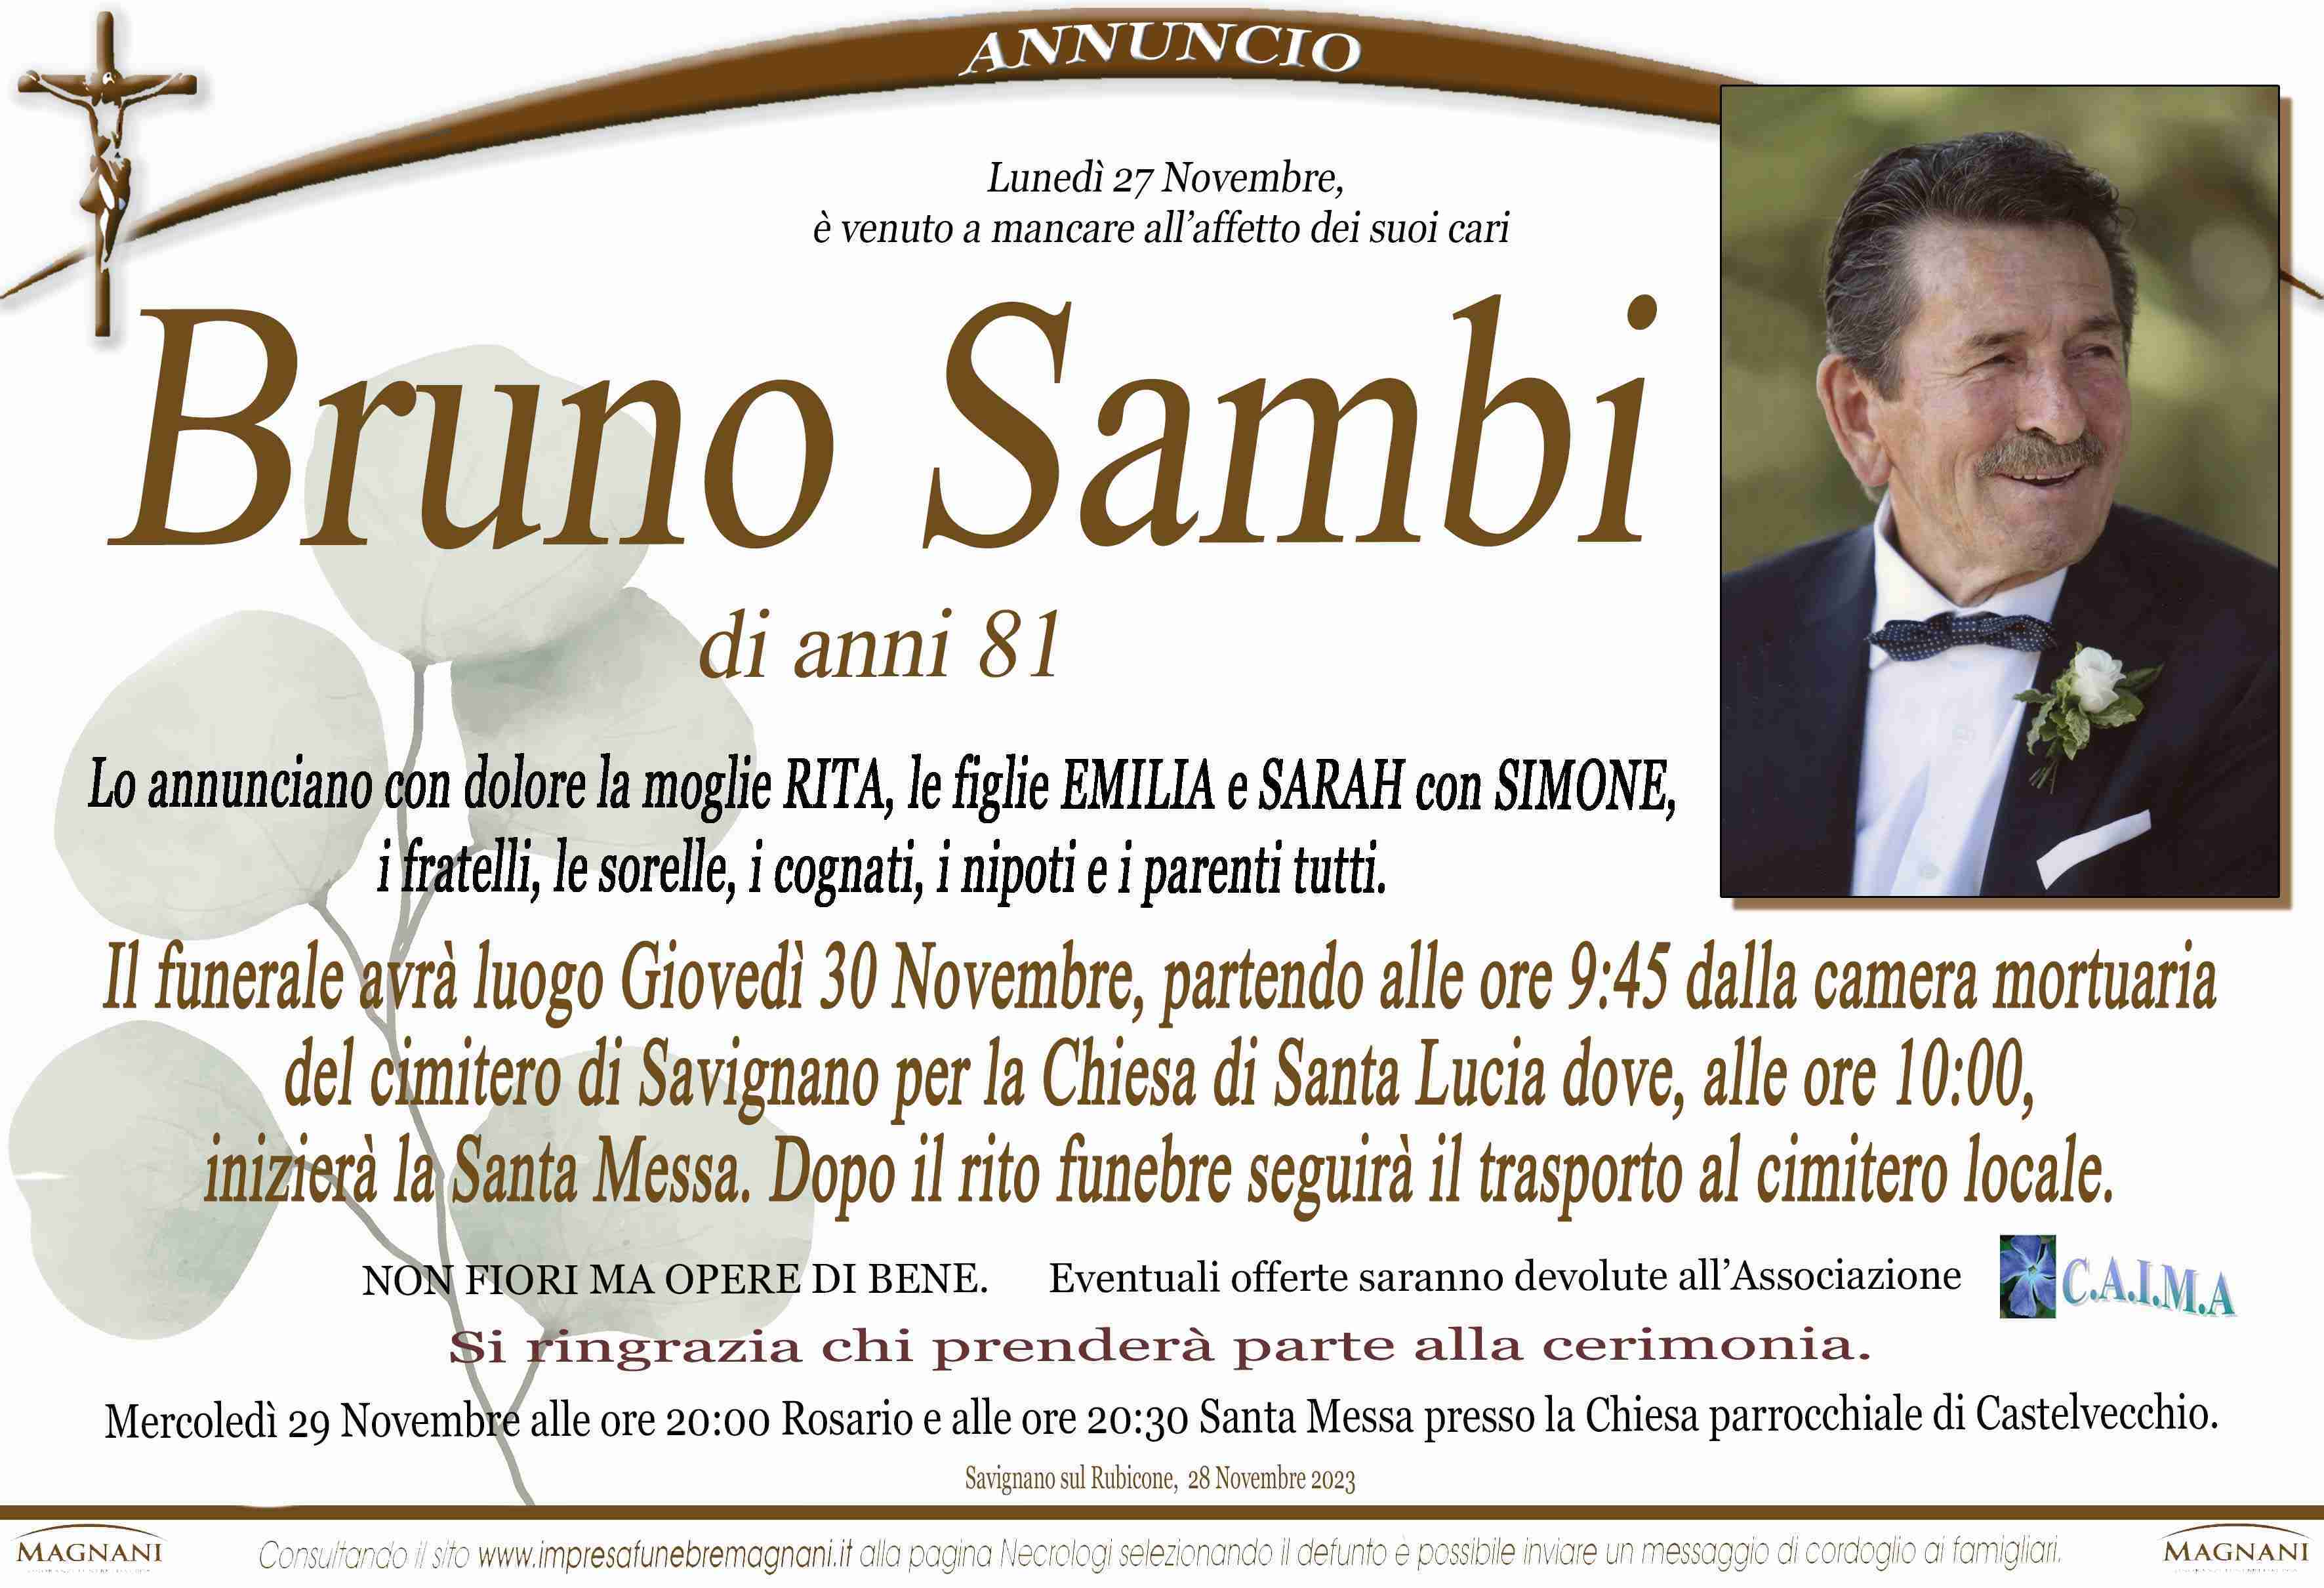 Bruno Sambi